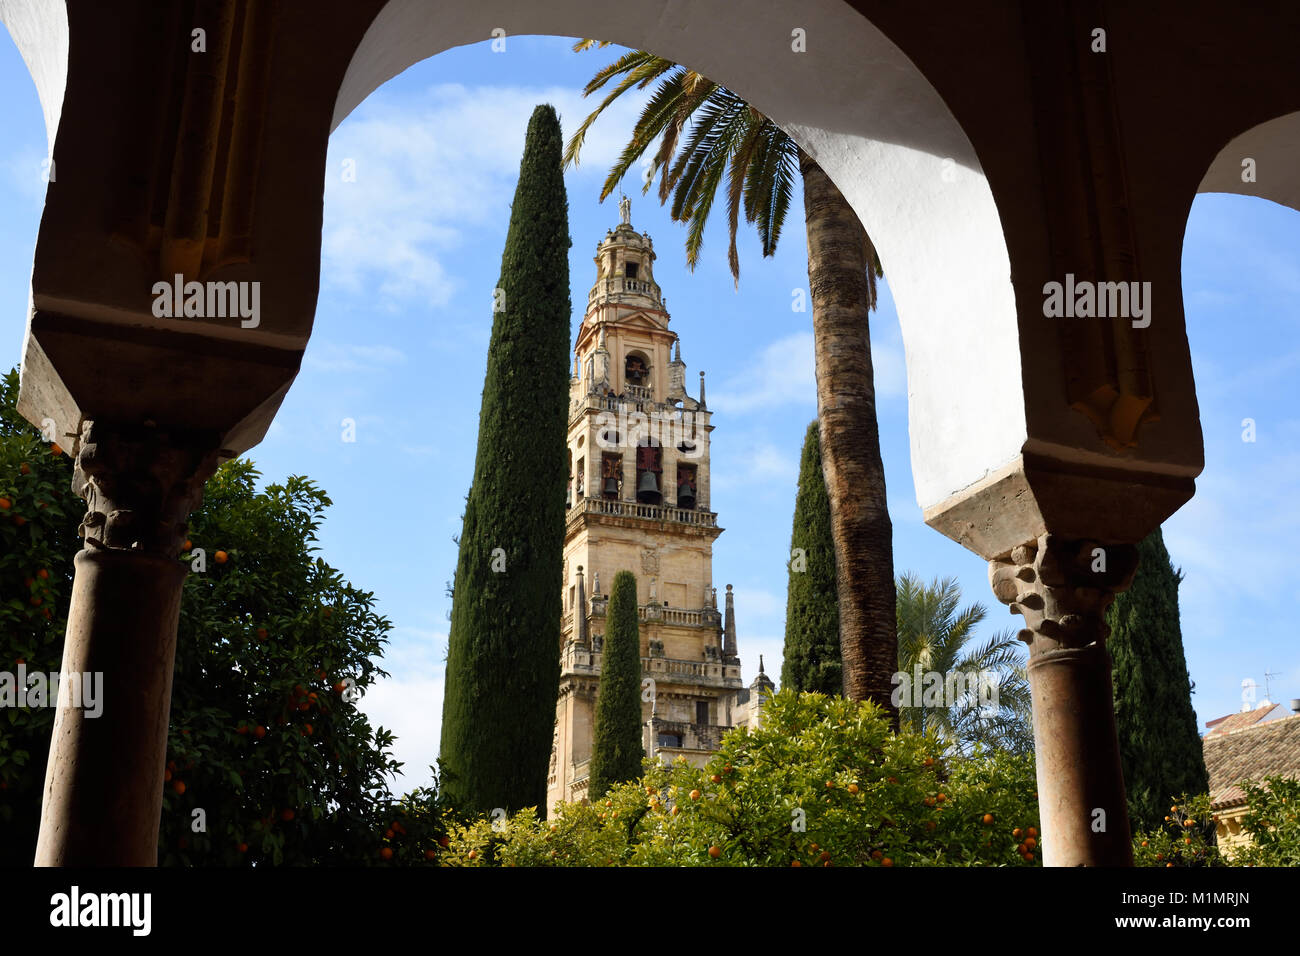 Cordoba- Mesquita, cathédrale, une mosquée islamique médiéval transformé en un chrétien catholique romain, l'Andalousie ( Orange- et de palmiers dans la cour de l'orange) l'Espagne, l'espagnol Banque D'Images